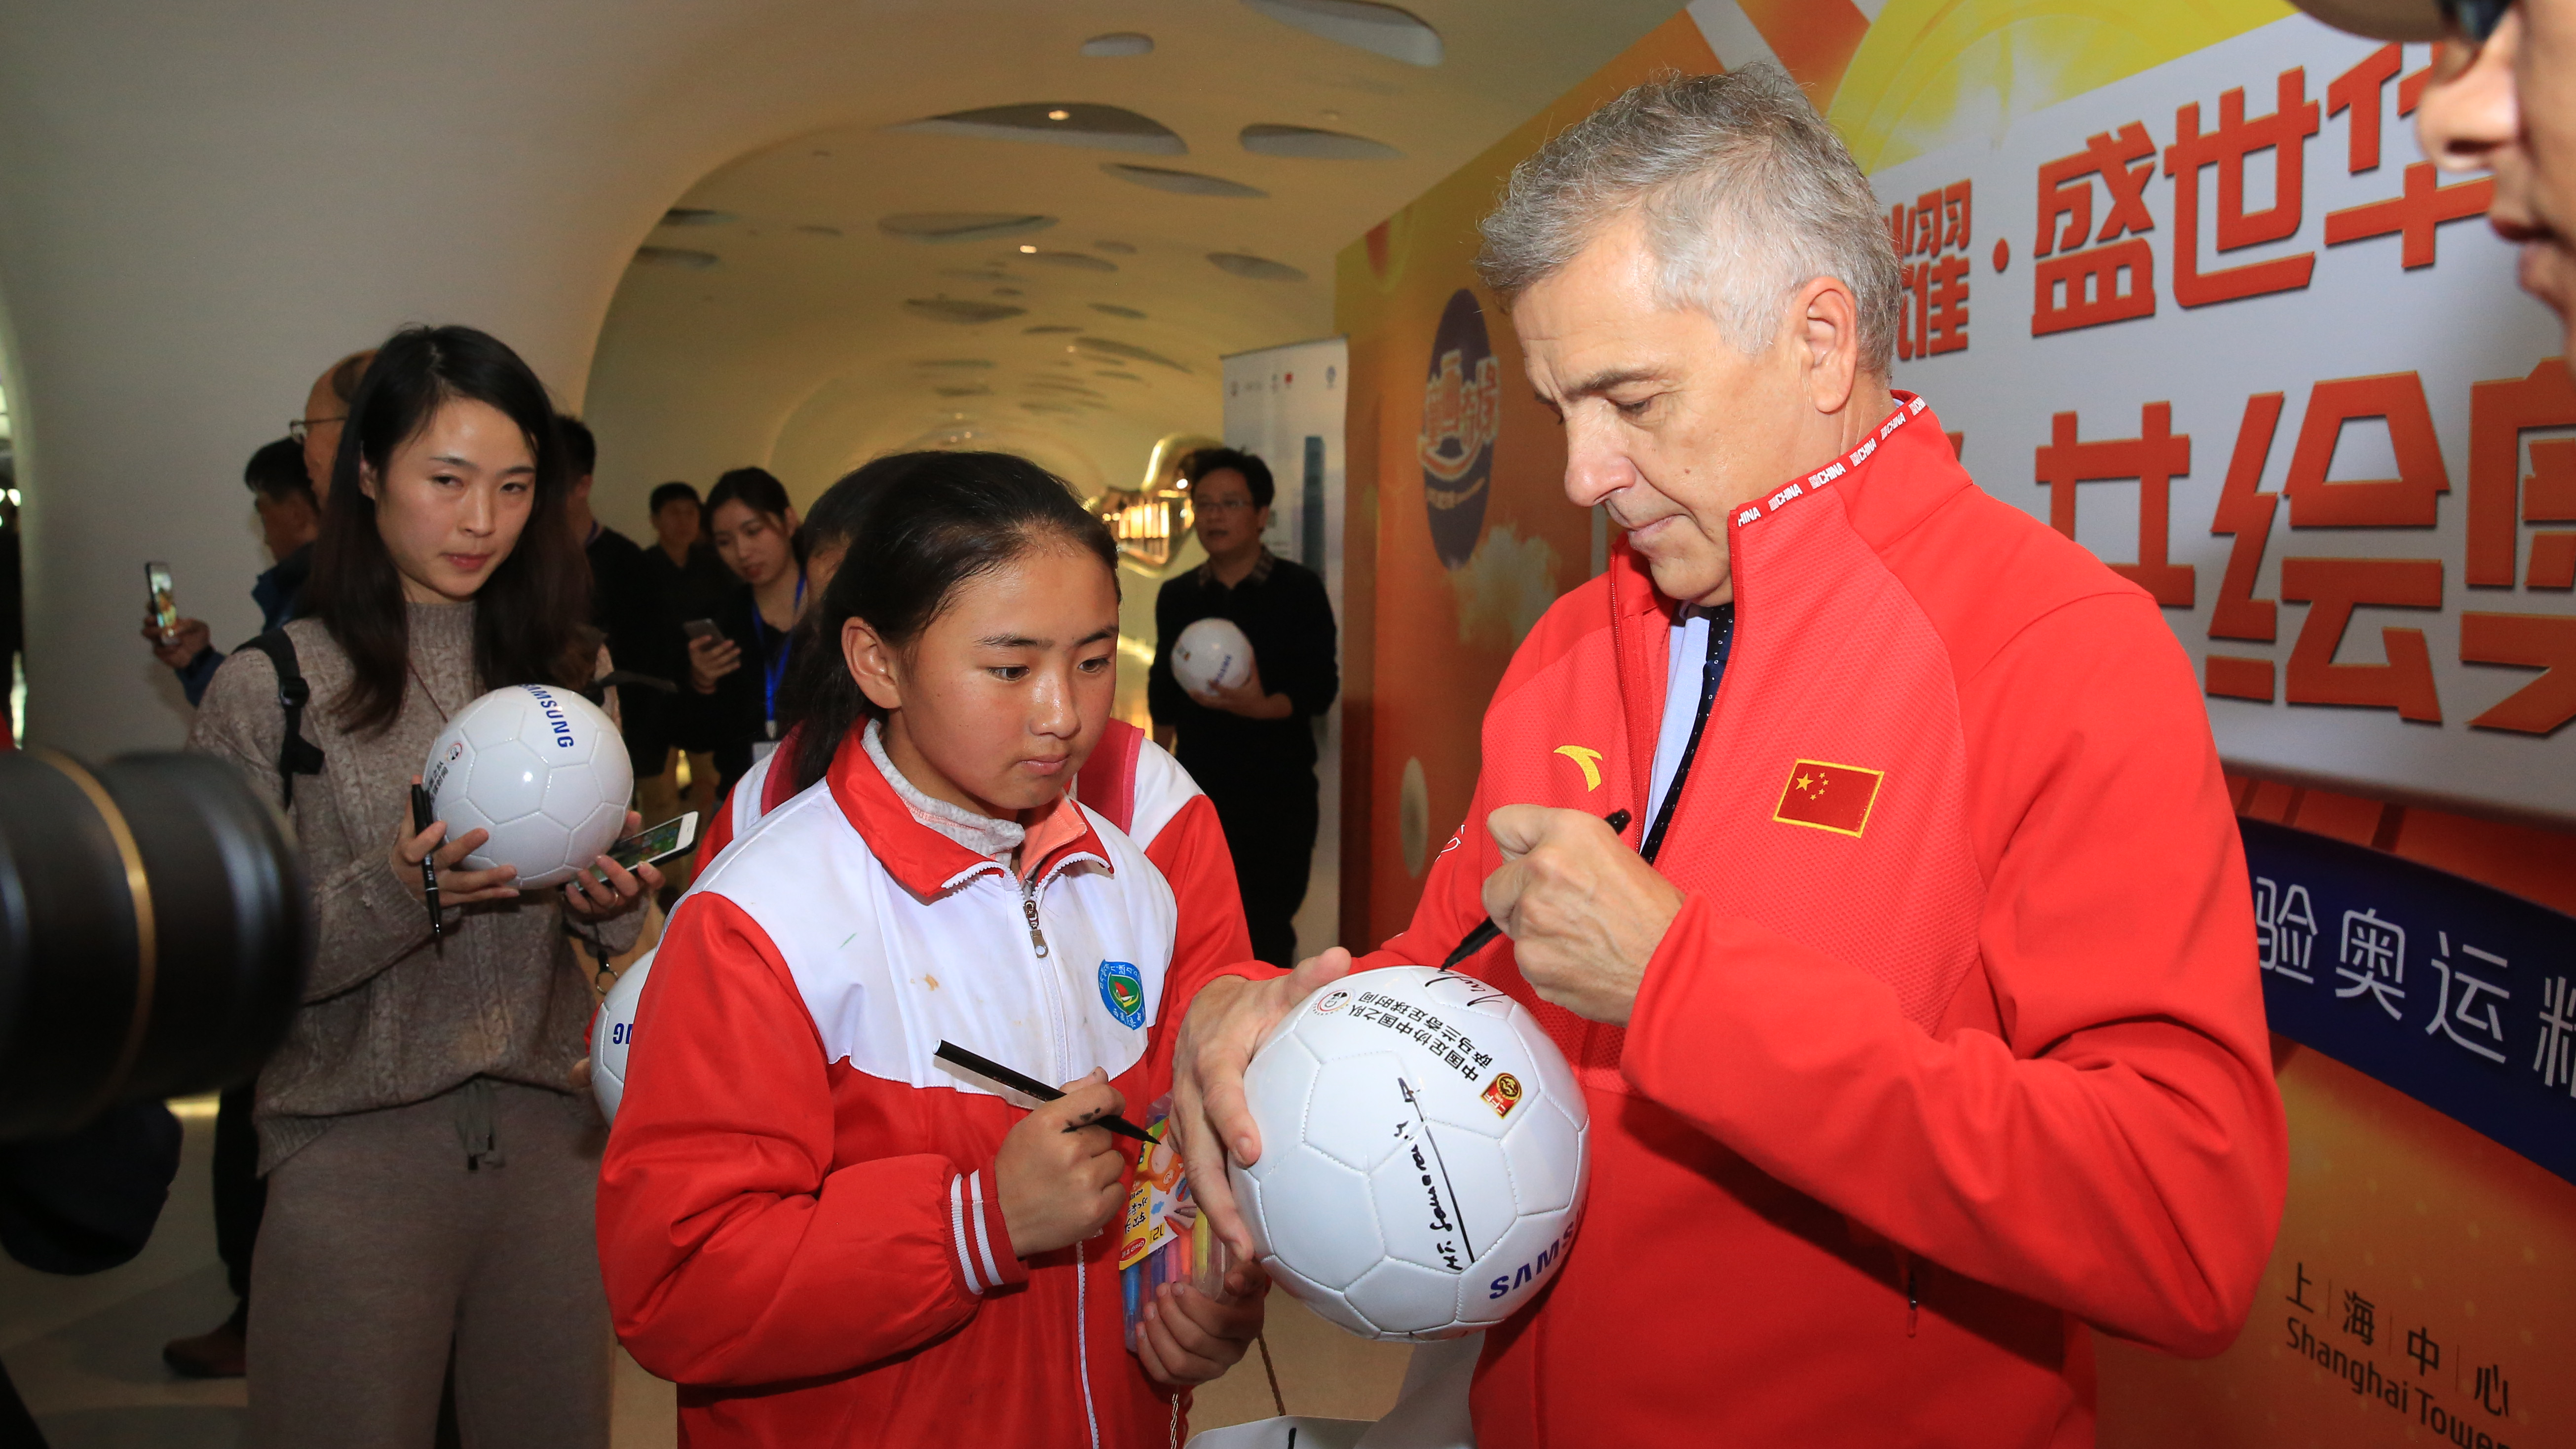 Samaranch signs autographs during the Shanghai Olympic Expo, Shanghai, 2018. /Samaranch Foundation